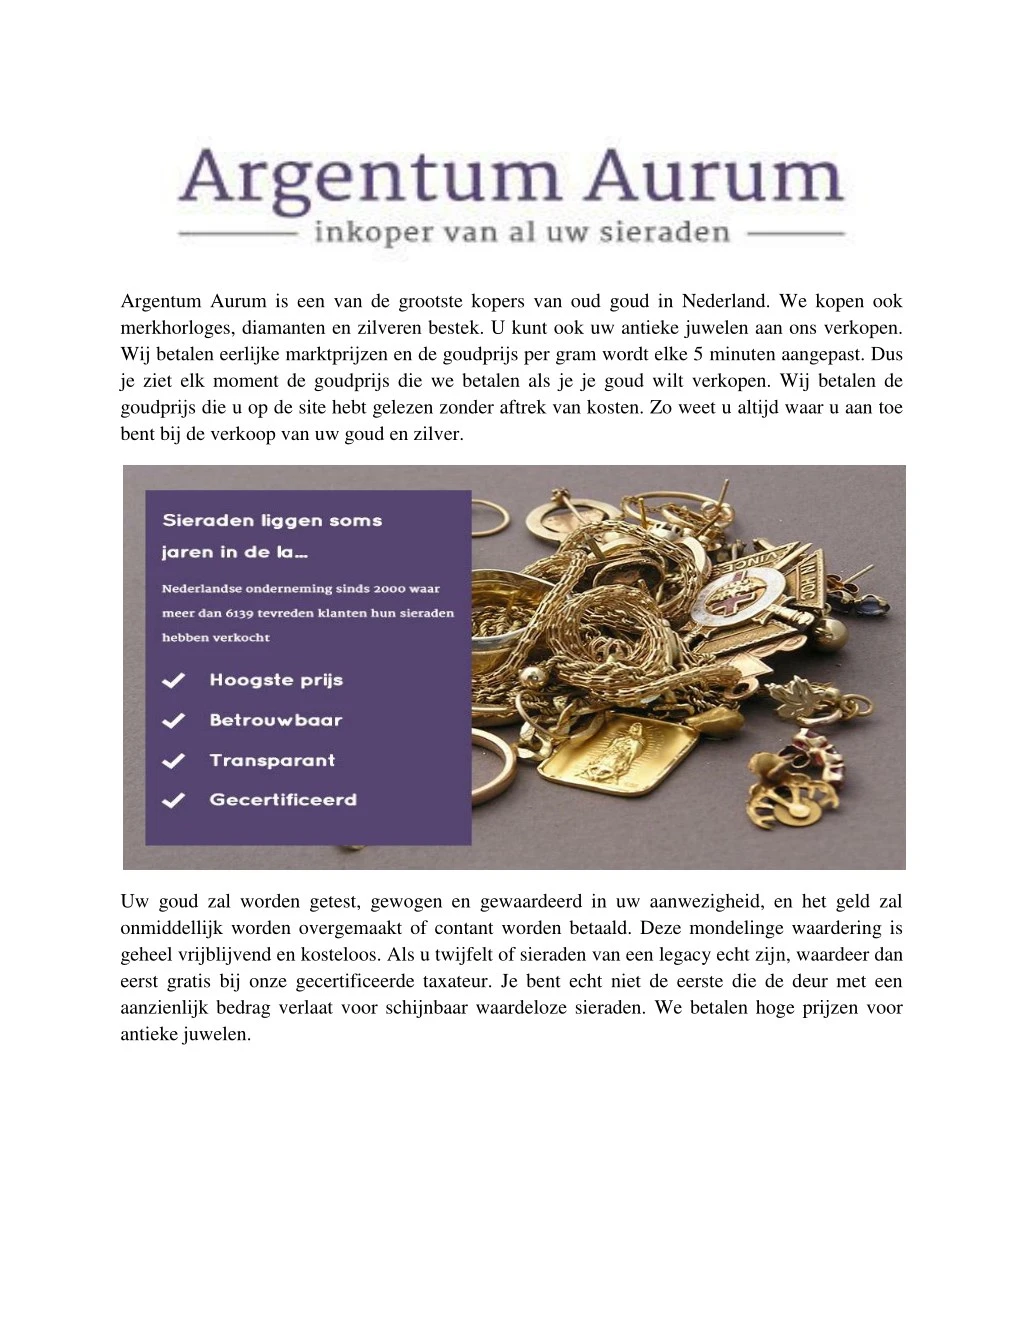 argentum aurum is een van de grootste kopers